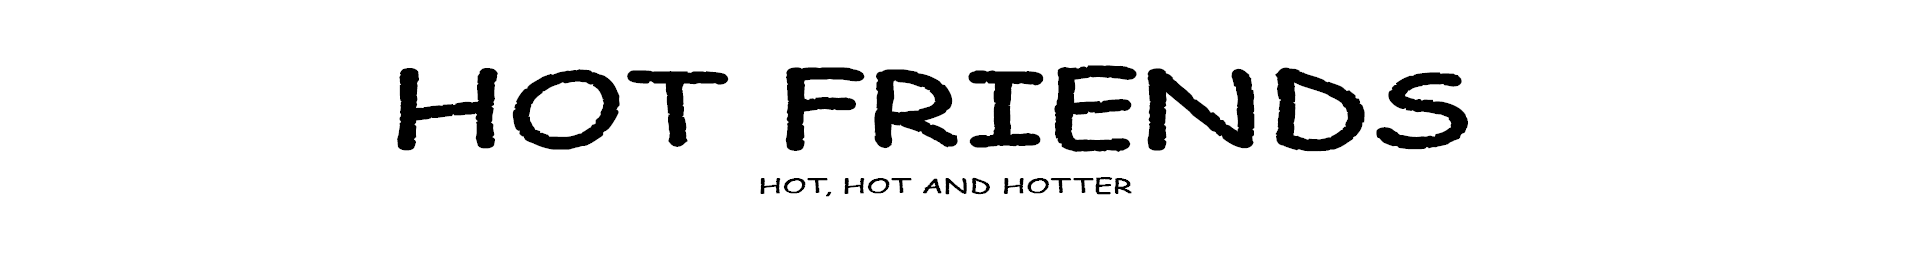 Hot Friends banner